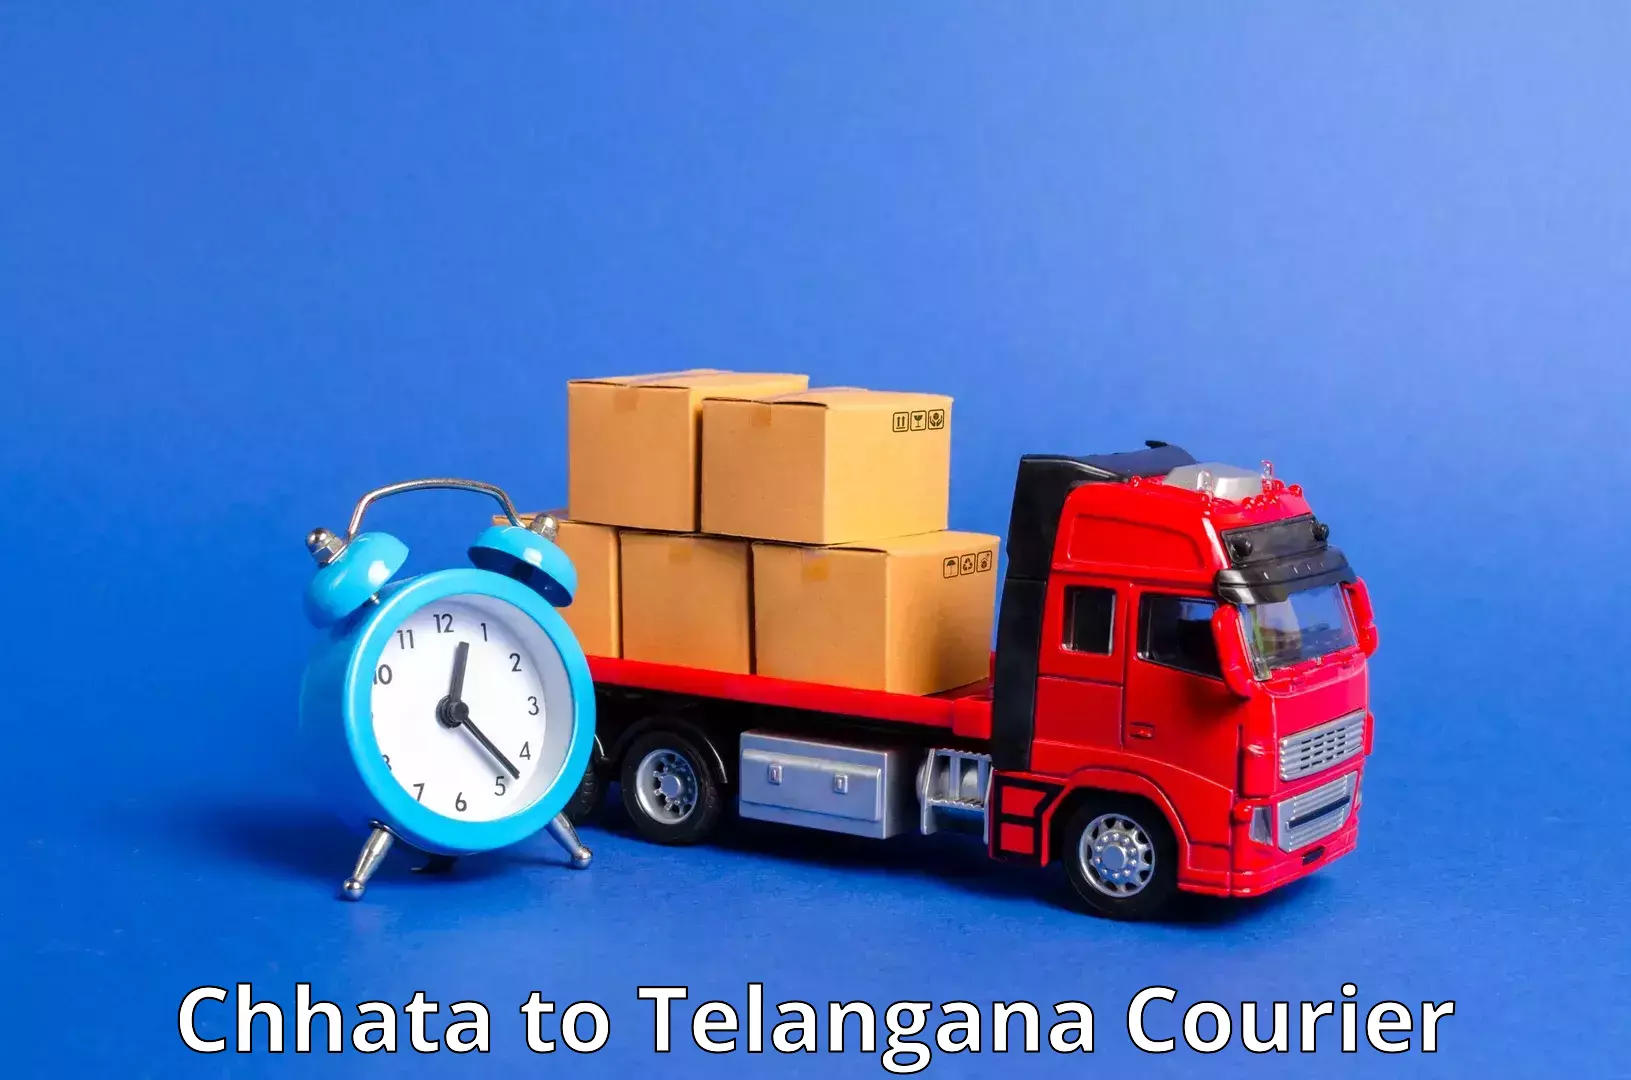 Express package handling in Chhata to Tiryani